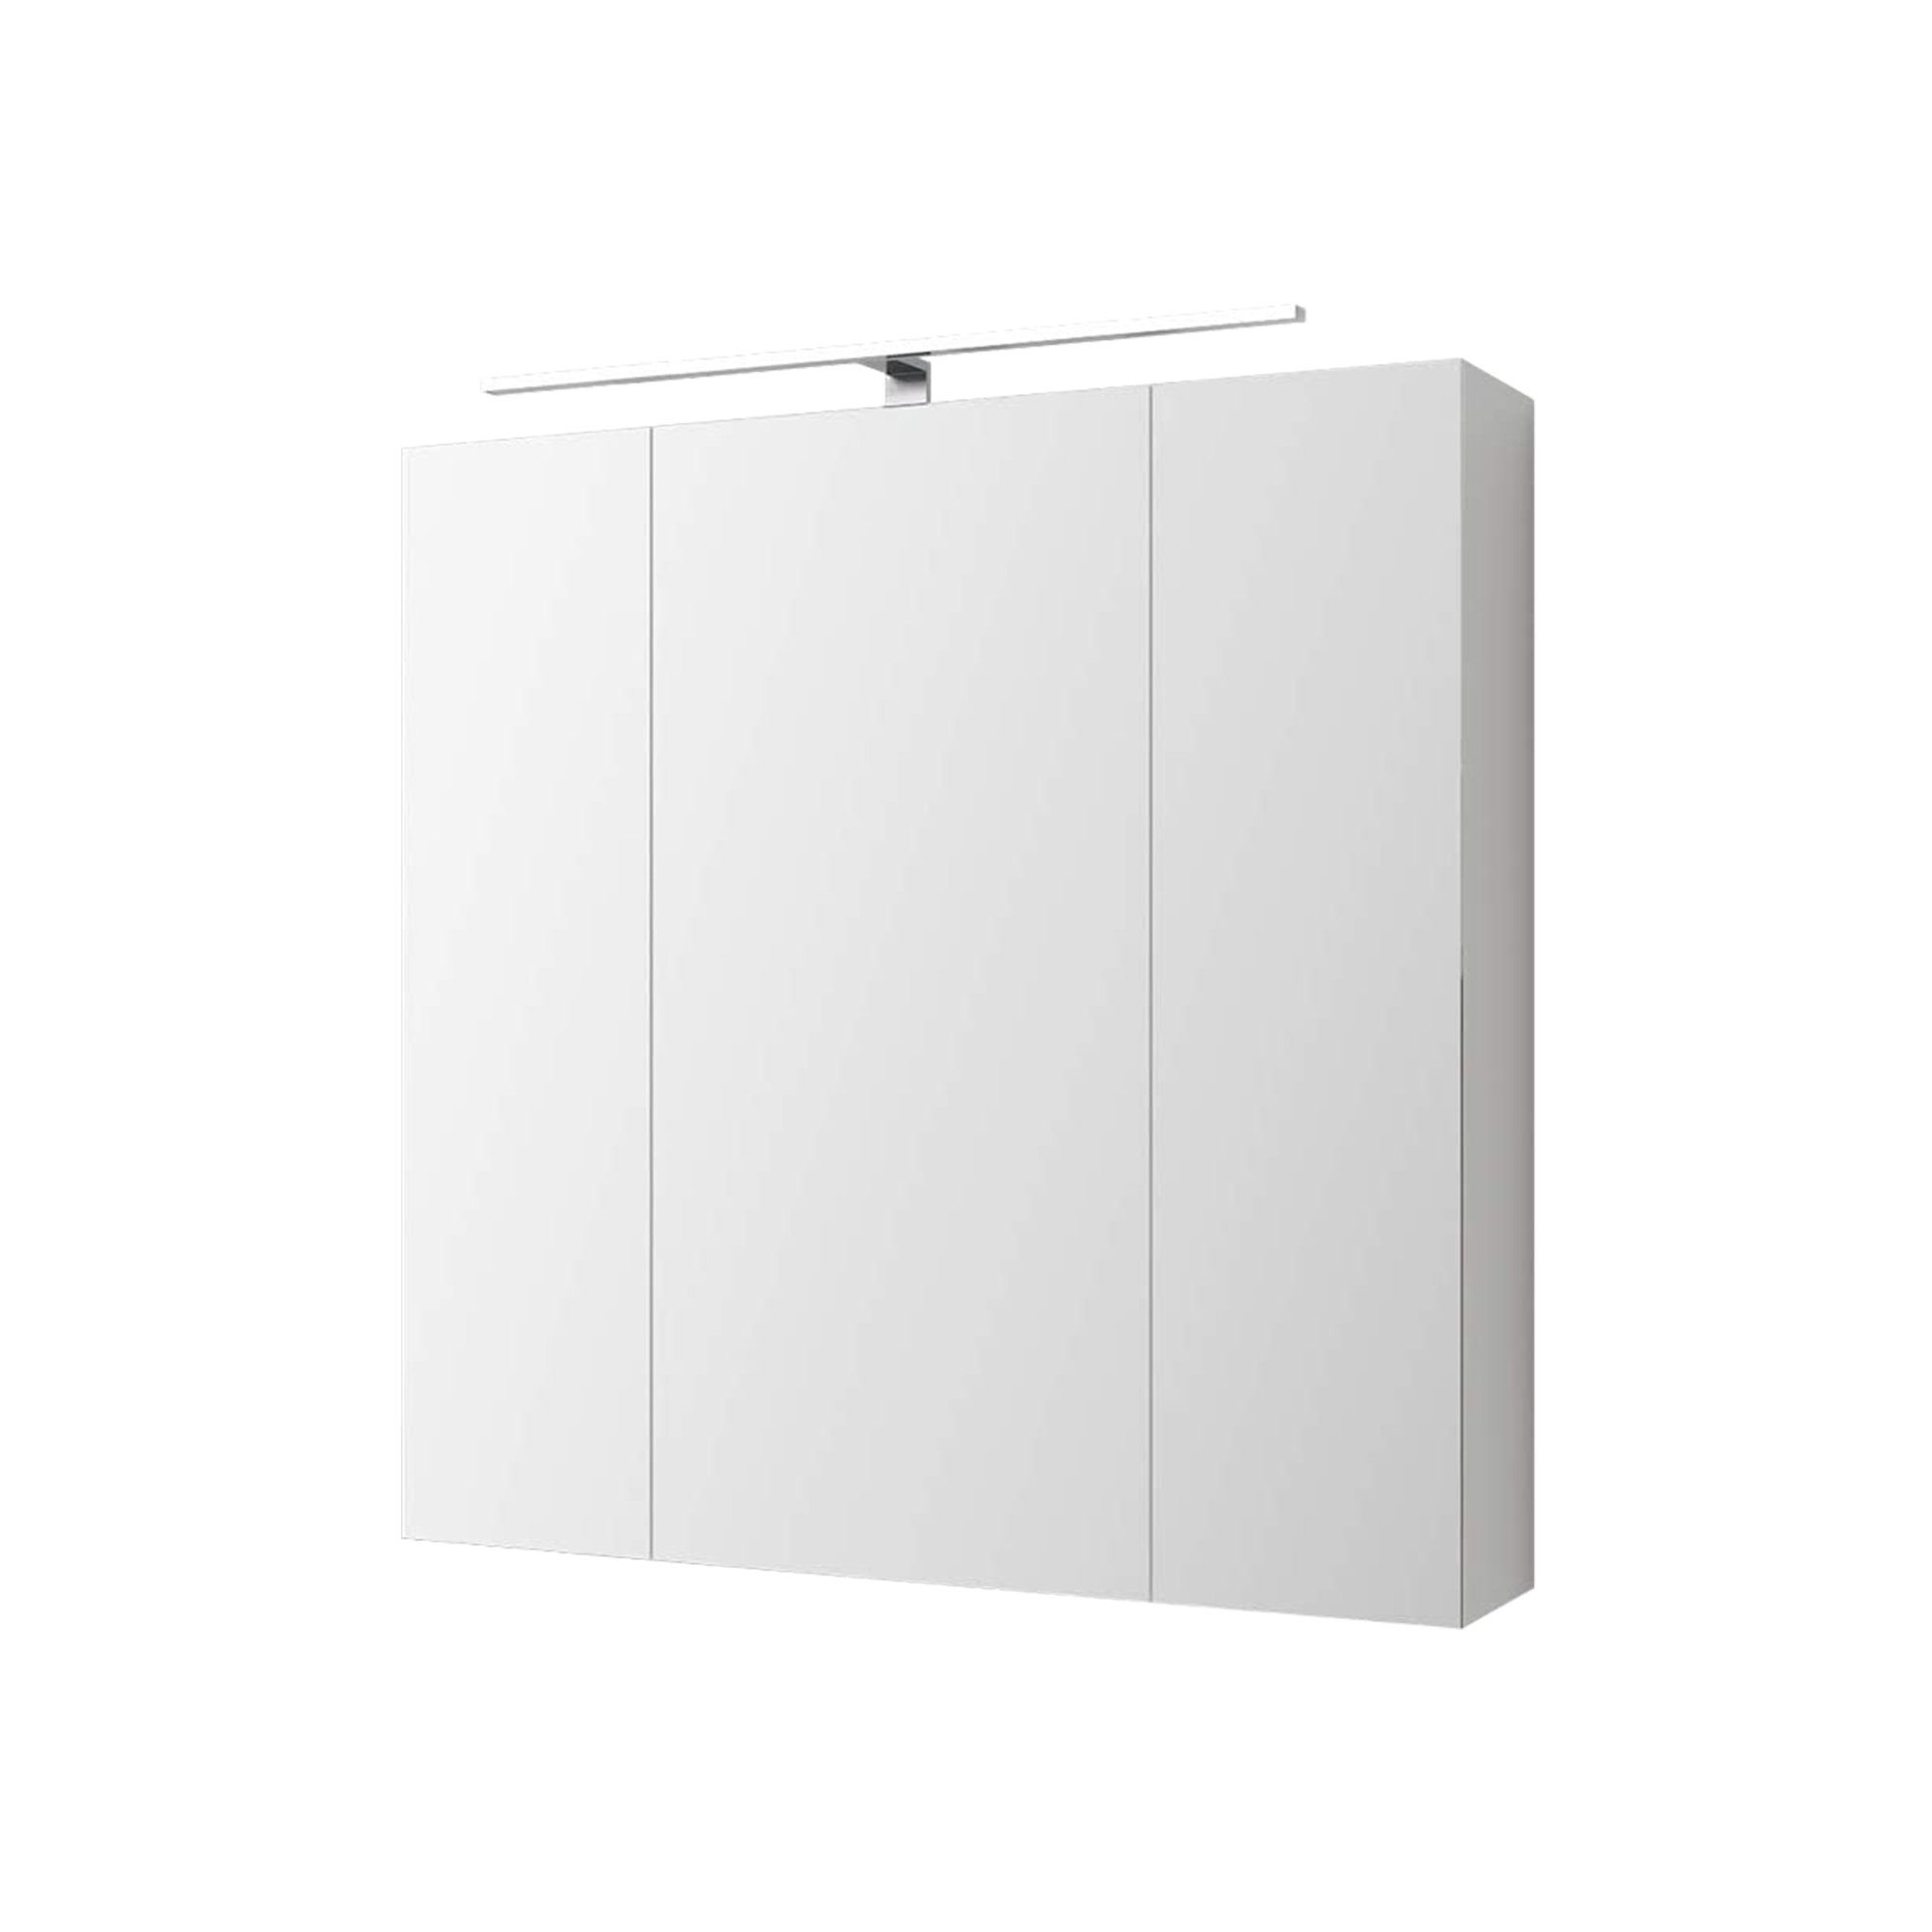 ML-DESIGN Badezimmerspiegelschrank Steckdose Wandspiegel Beleuchtung Weiß Badezimmerschrank Badschrank LED Badspiegel Lichtschalter 3-Türig 724x72x15cm